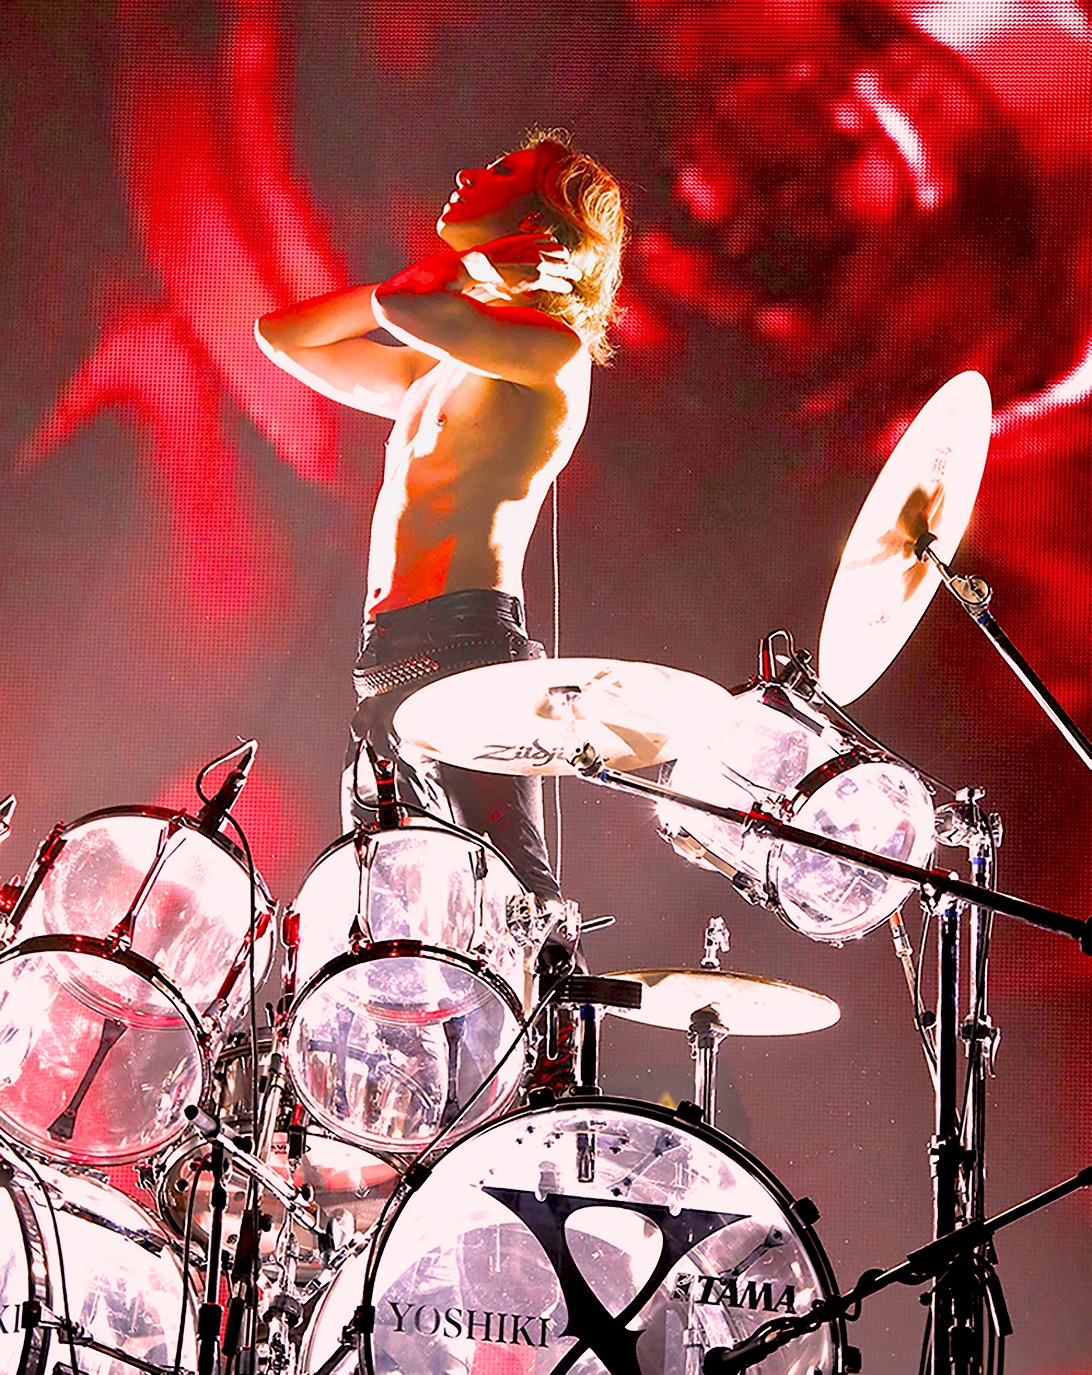 X Japan Yoshiki モデルスネア Tama Xy146 発売日決定 Dj機材 Pcdj 電子ドラム ミュージックハウスフレンズ